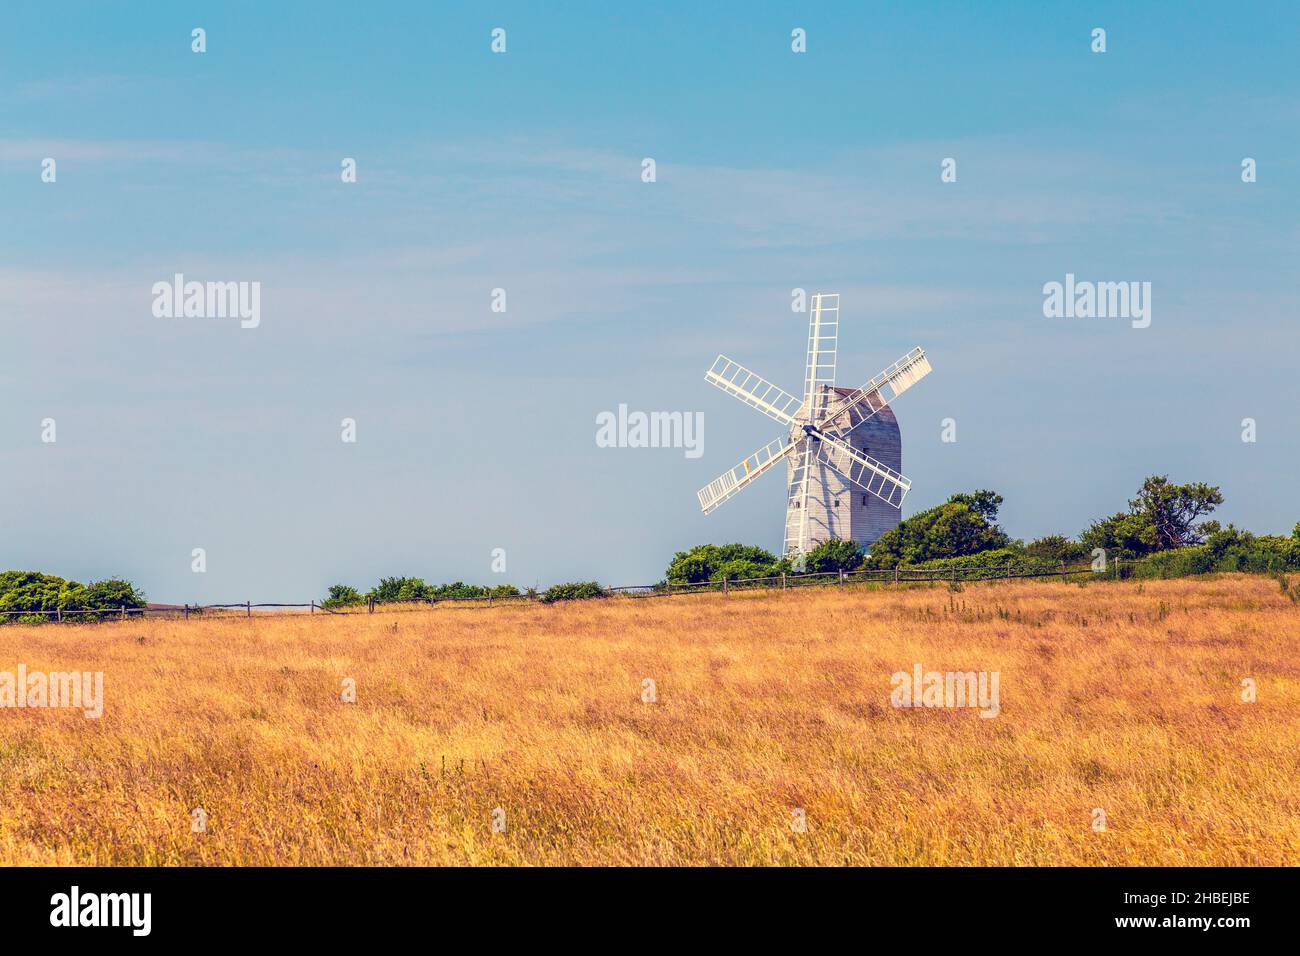 Weiße Windmühle aus Holz in einem Feld - ashcombe Windmühle in Kingston in der Nähe von Lewes, South Downs National Park, England, Großbritannien Stockfoto